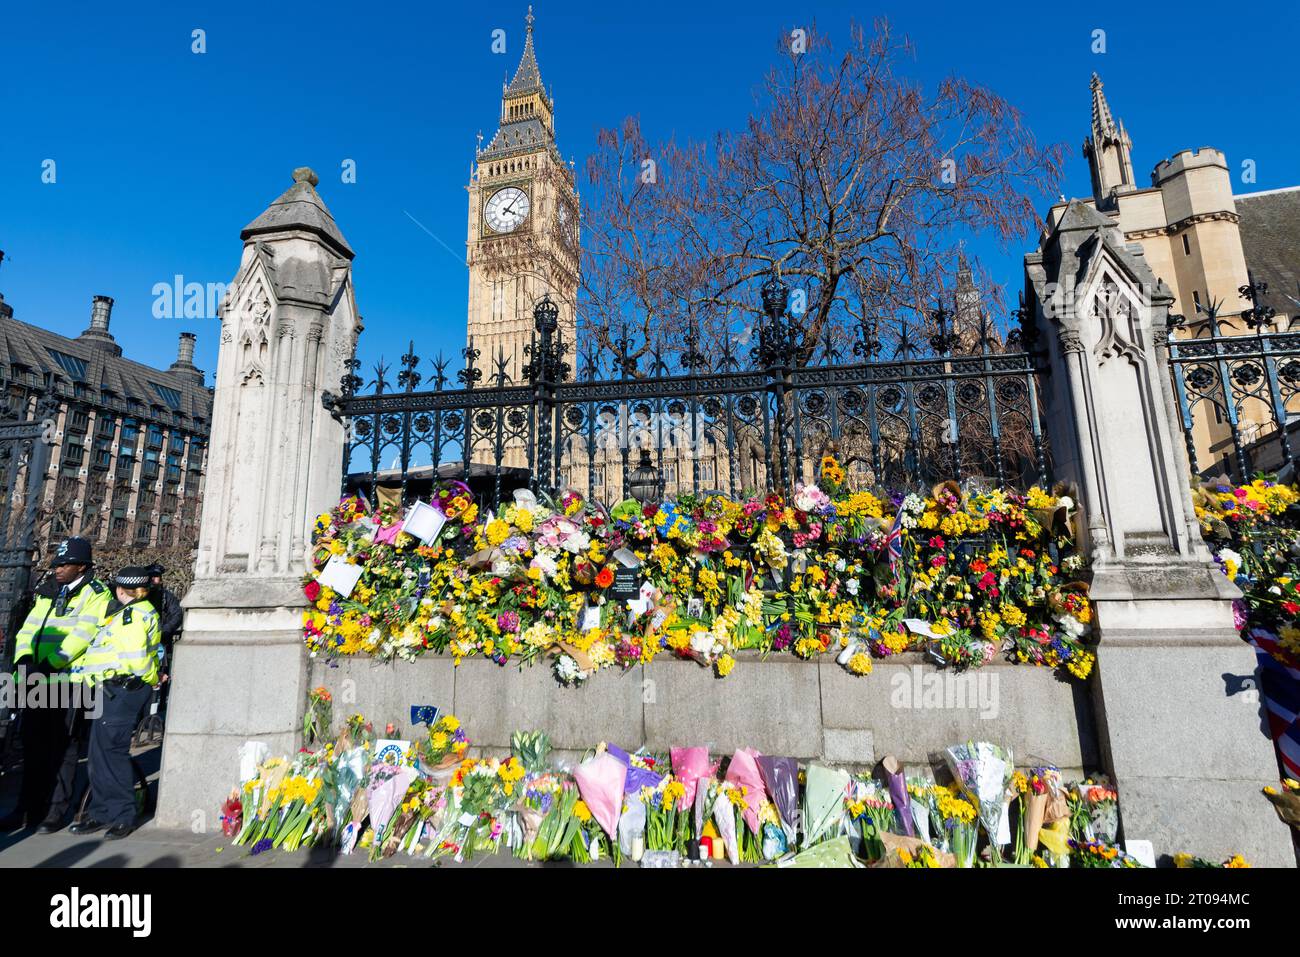 Fleurs placées sur la clôture du Palais de Westminster suite au terrorisme qui a coûté la vie au policier Keith Palmer. Attaque terroriste Banque D'Images